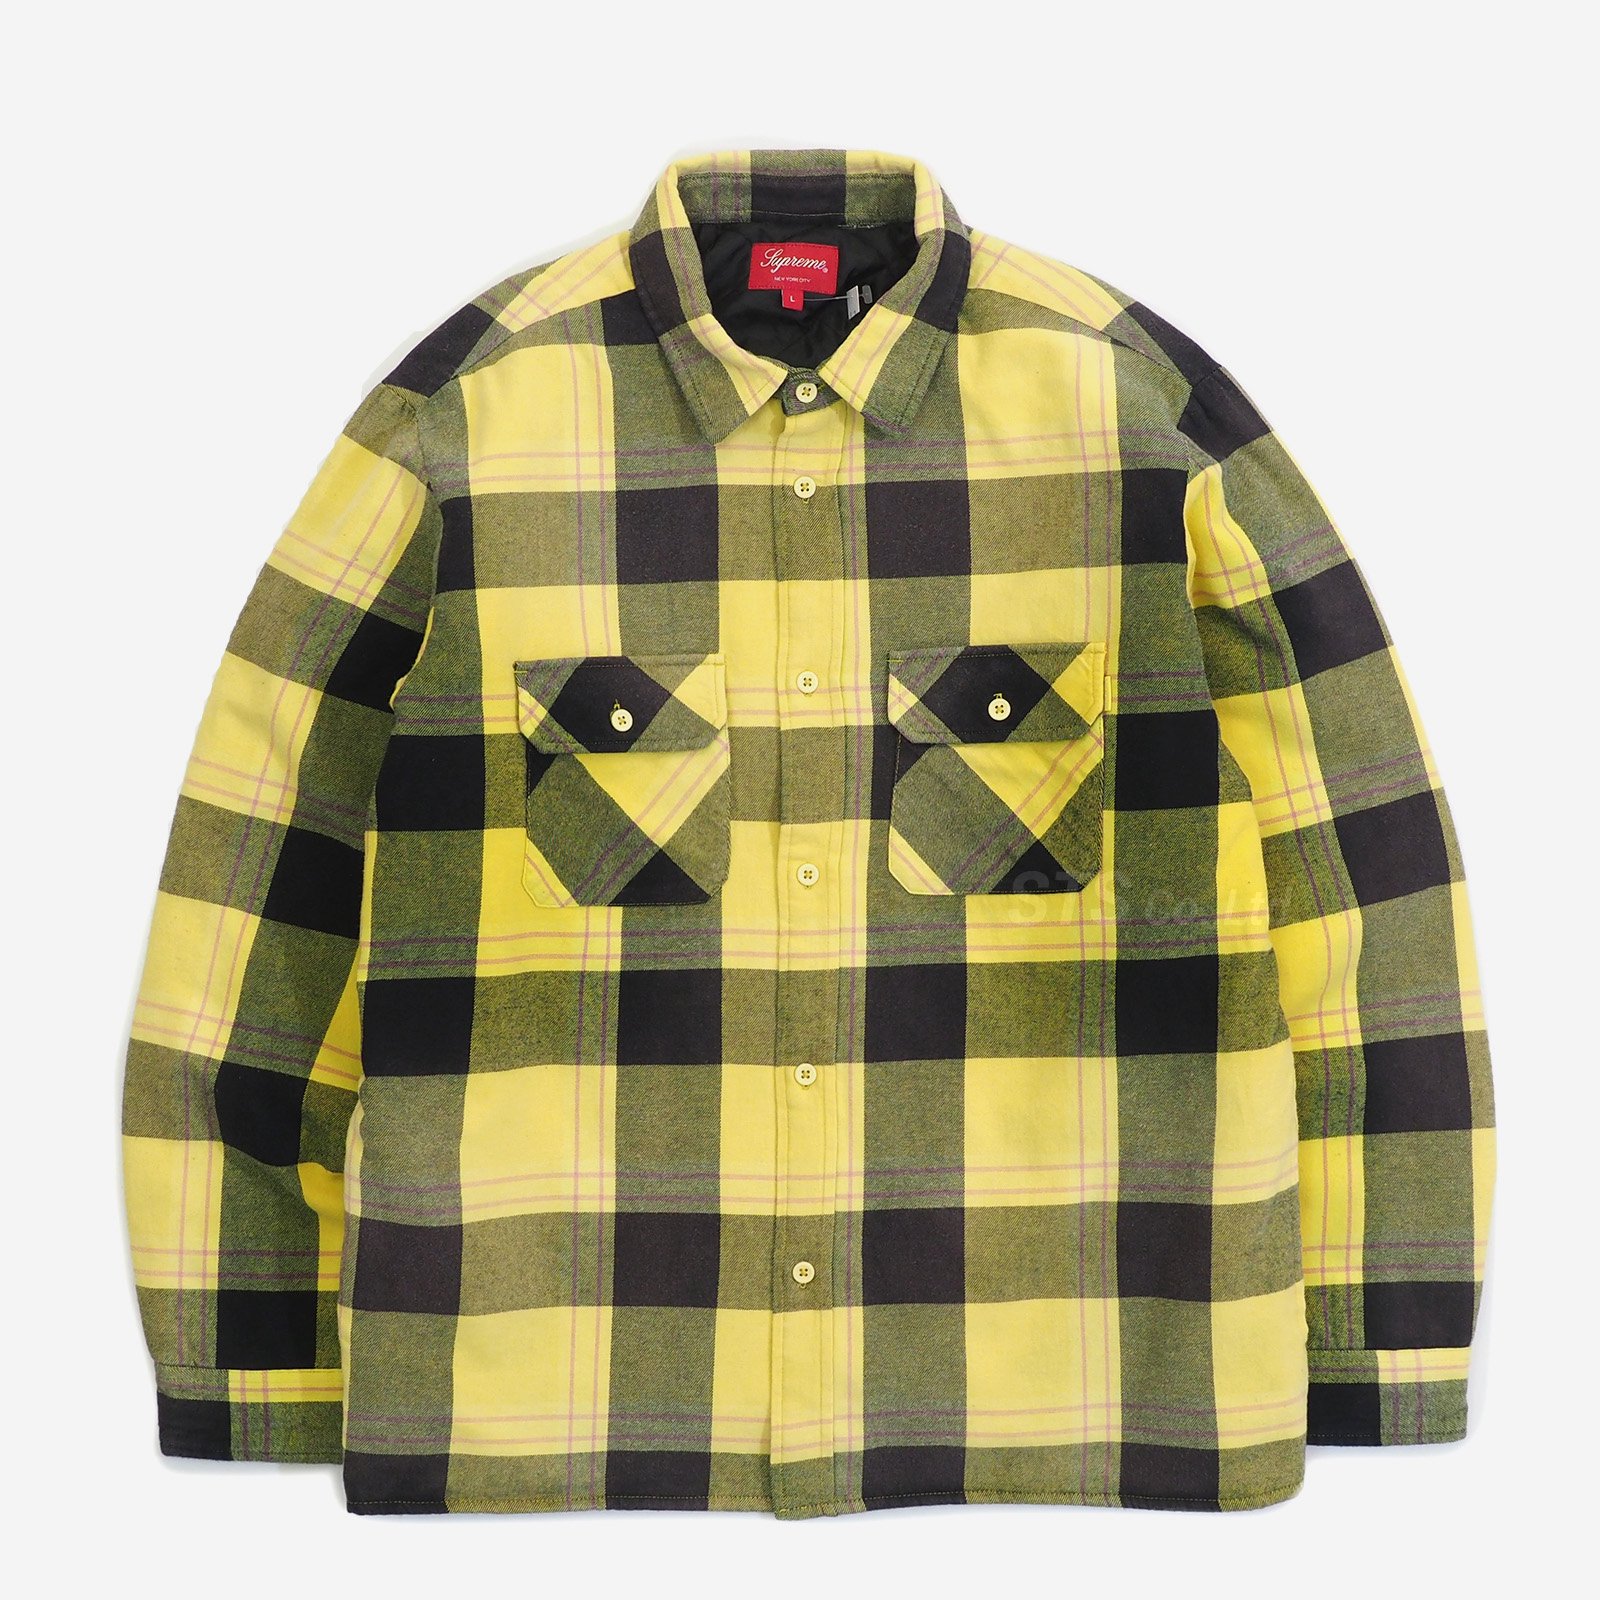 正規取扱店販売品 Lサイズ Supreme Quilted Flannel Shirt | www ...